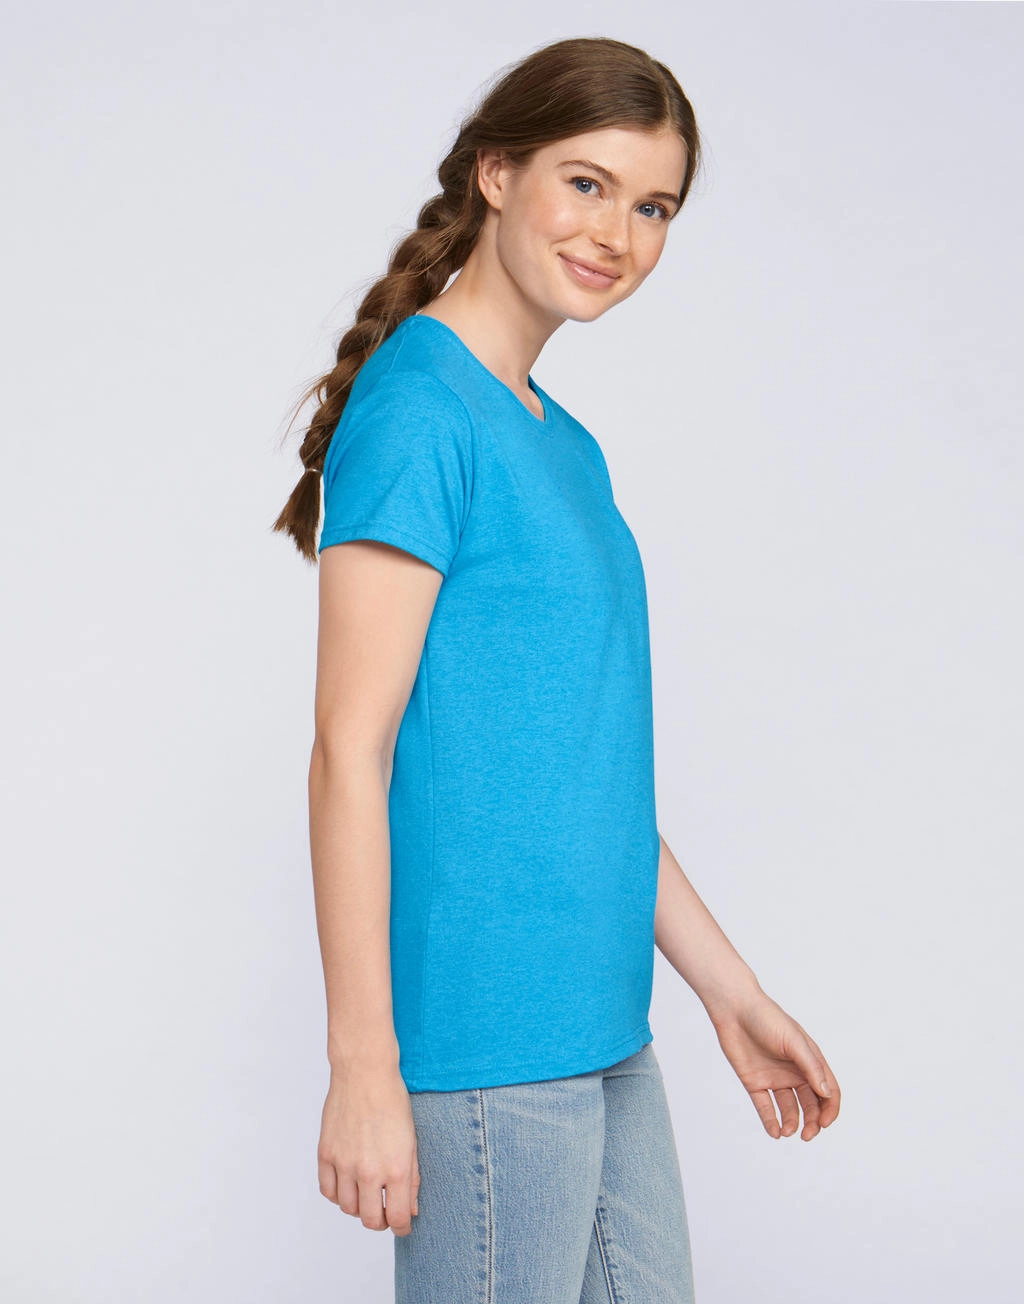 Ladies` Heavy Cotton T-Shirt zum Besticken und Bedrucken mit Ihren Logo, Schriftzug oder Motiv.